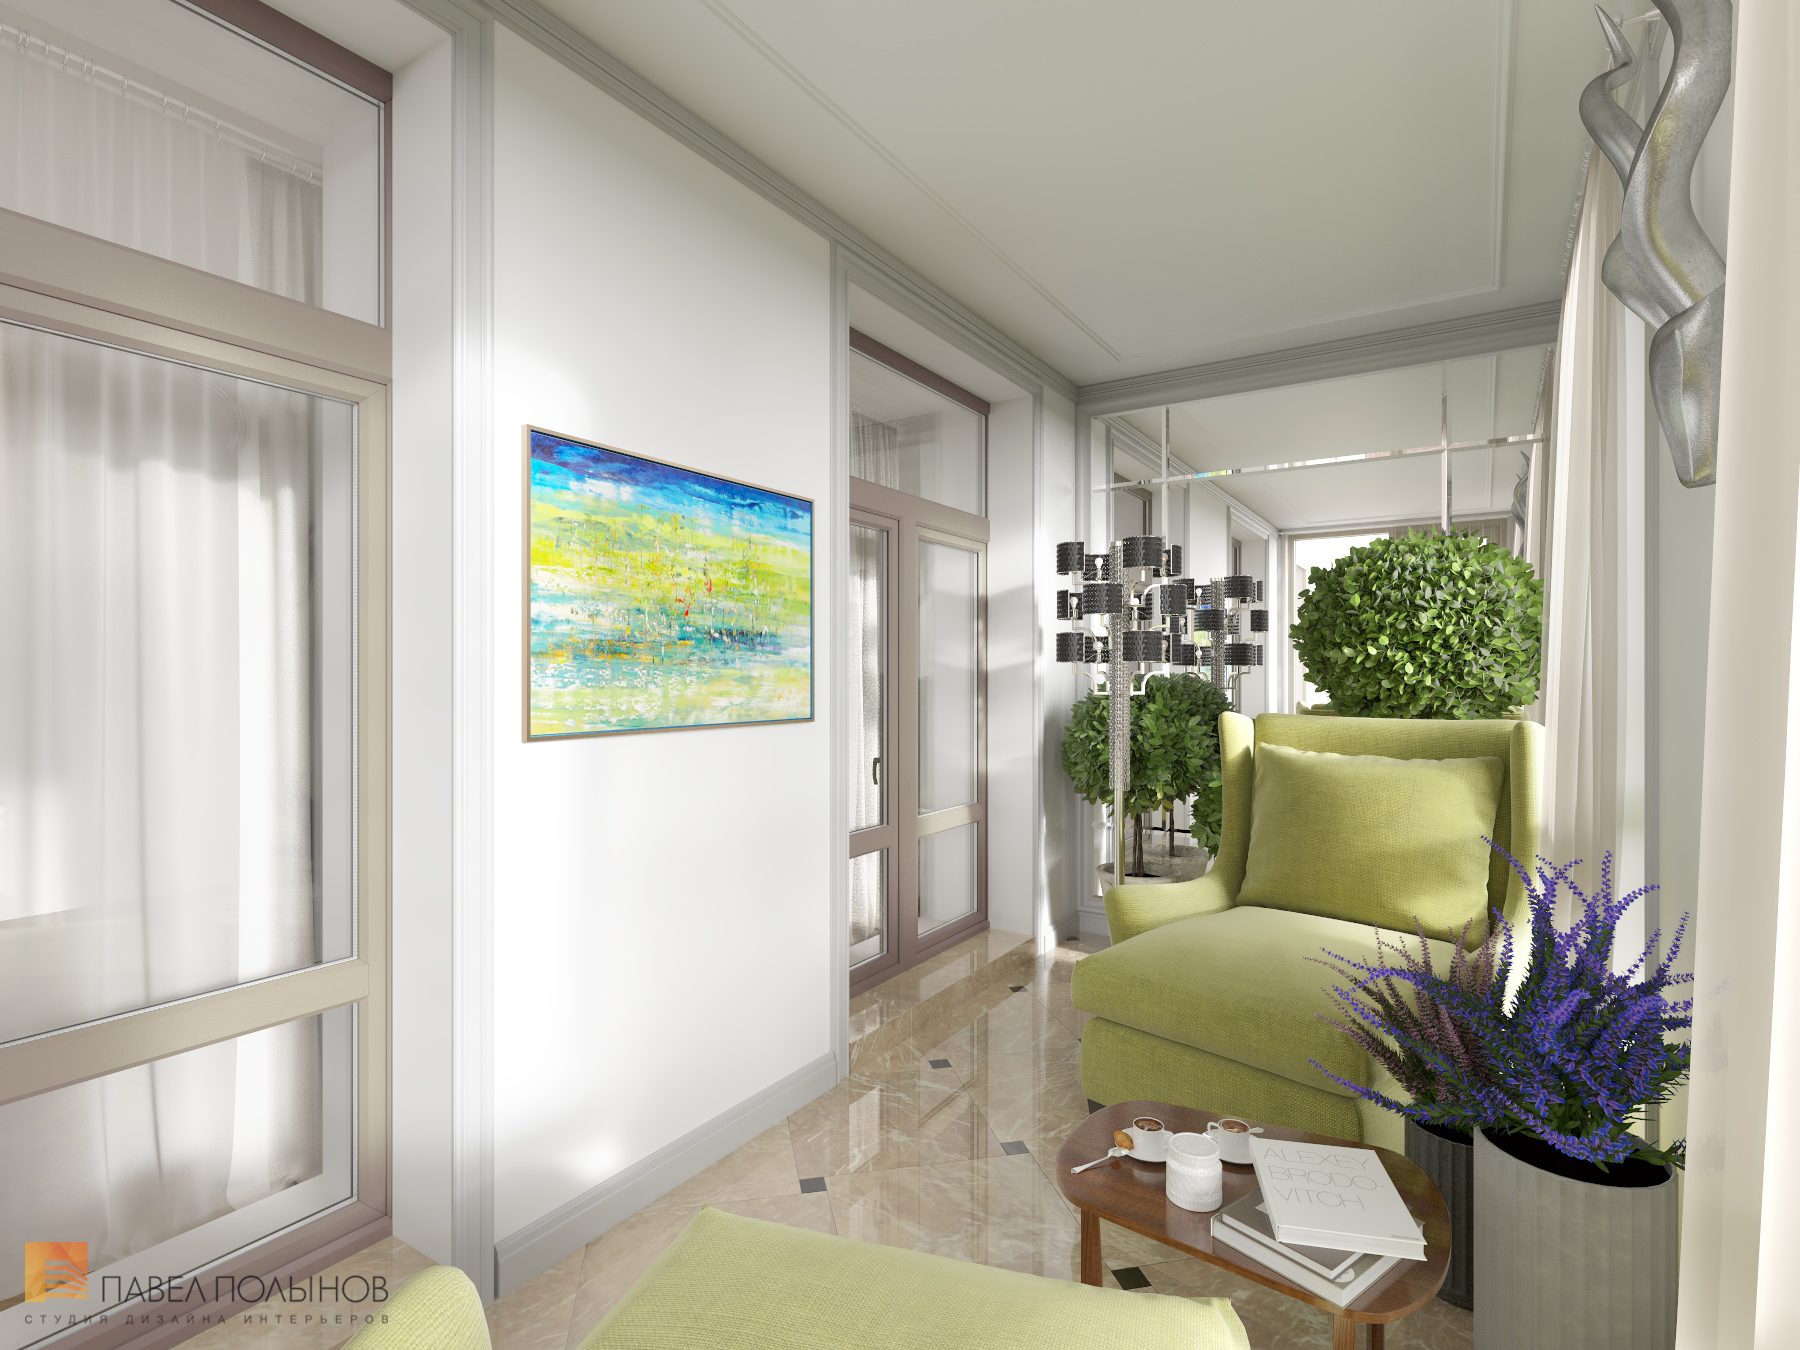 Фото дизайн лоджии из проекта «Интерьер квартиры в стиле неоклассики, ЖК «Парадный квартал», 190 кв.м.»